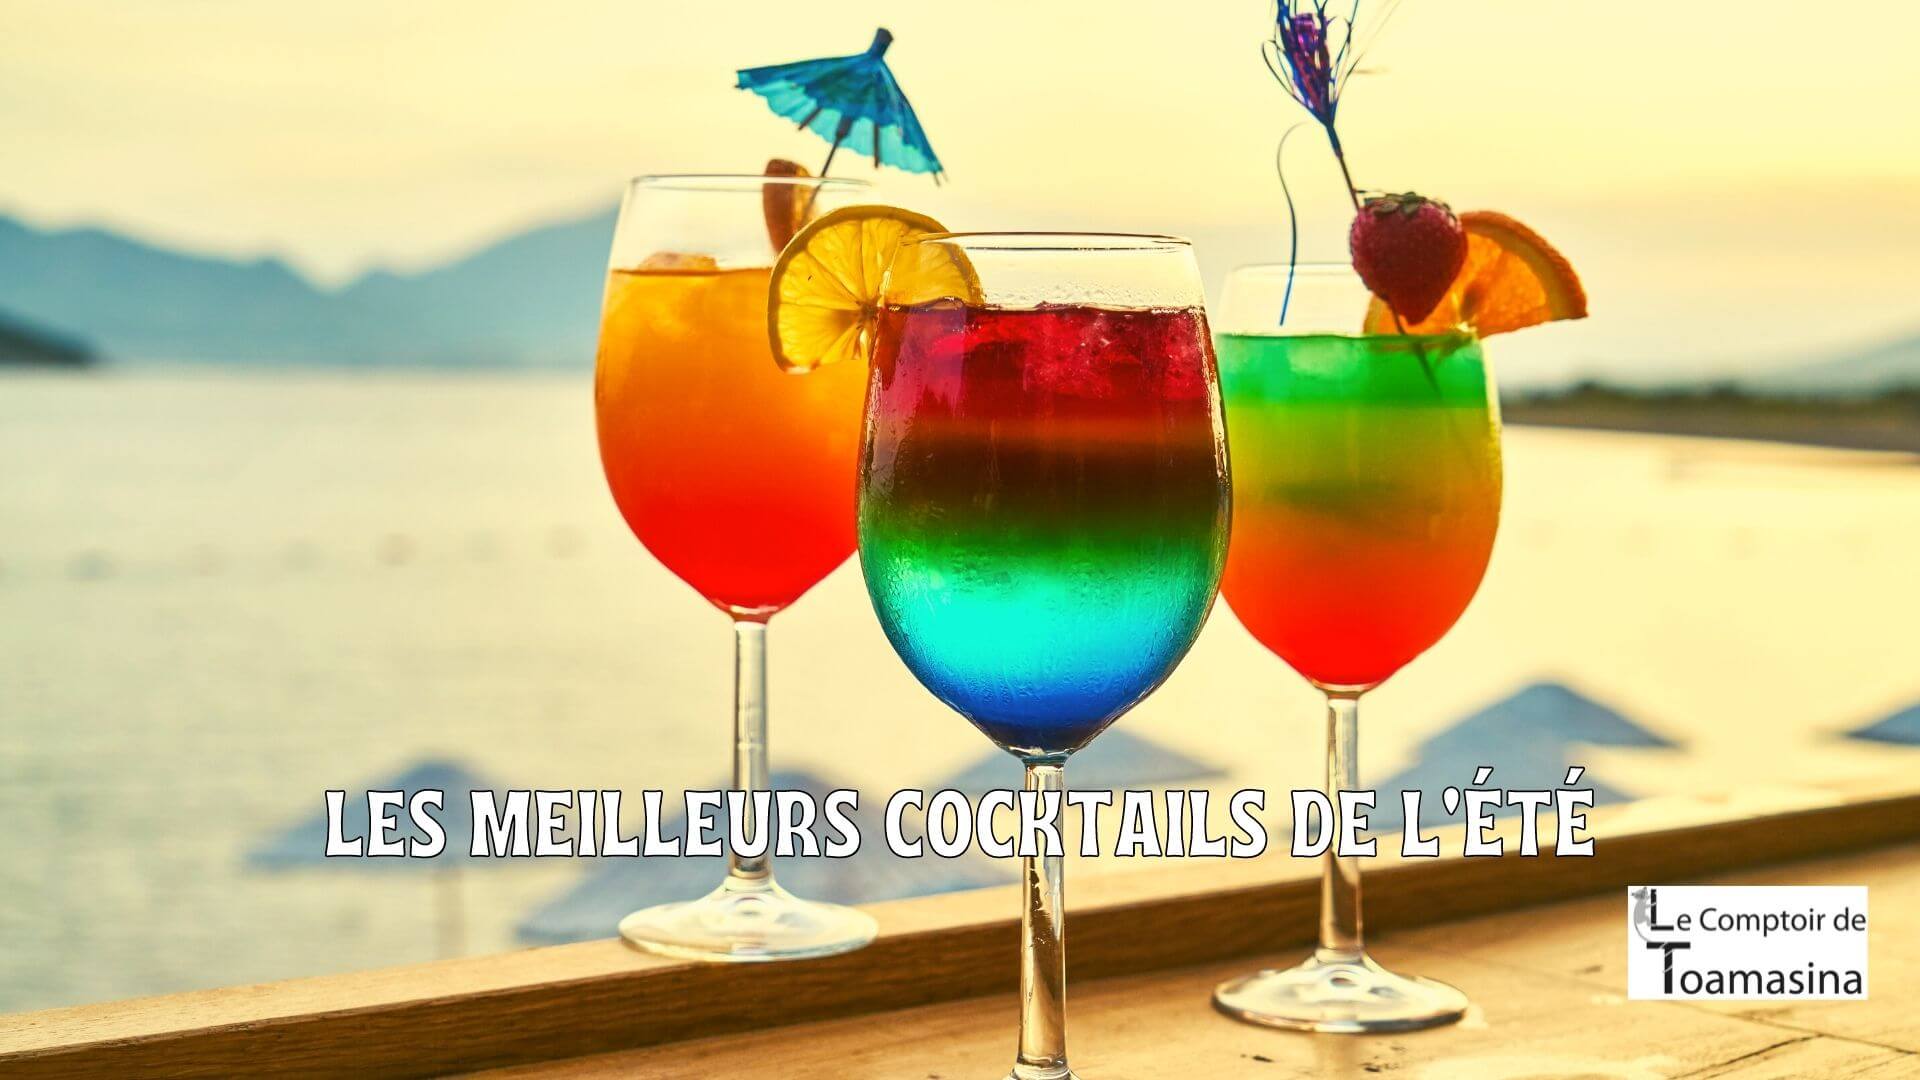 Les meilleures cocktails de l'été